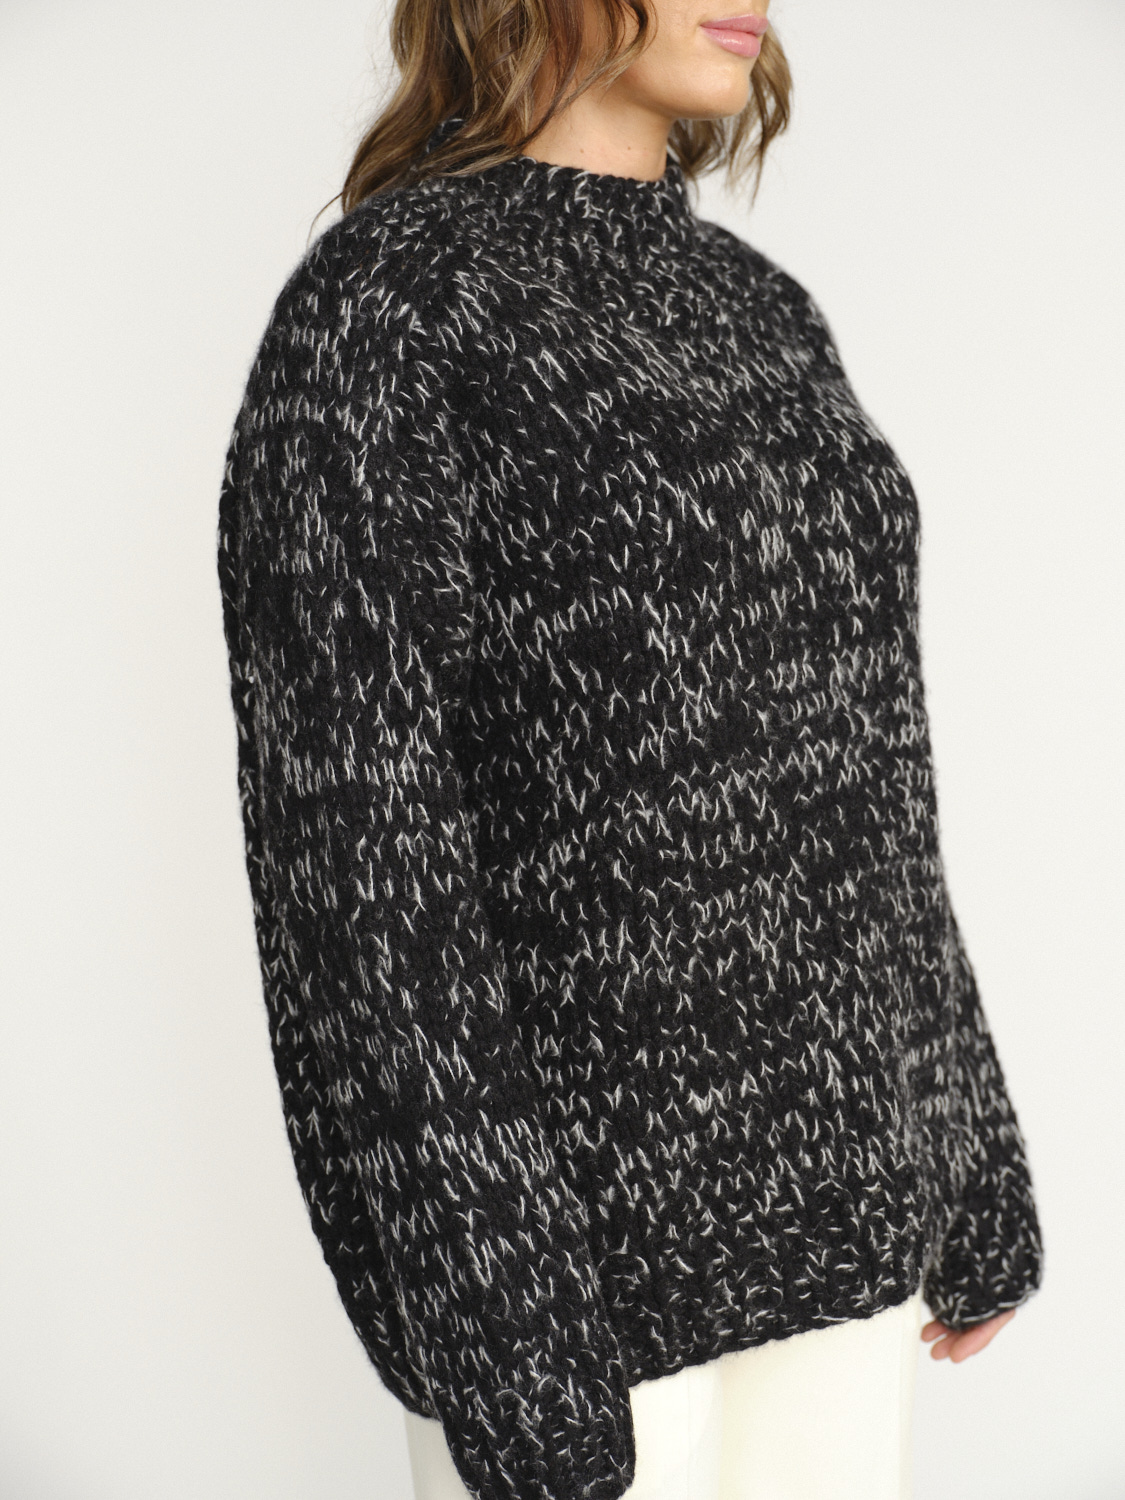 Iris von Arnim Veit - Milled sweater made of cashmere and silk black S/M